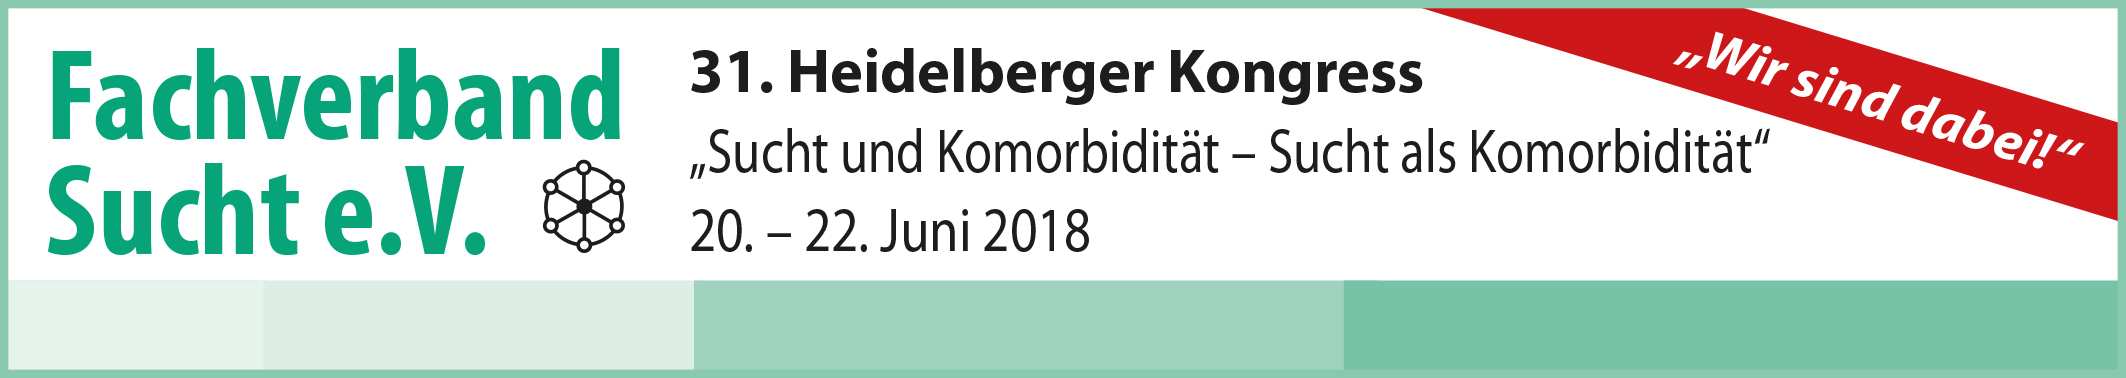 31. Heidelberger Kongress vom 20.-22. Juni 2018